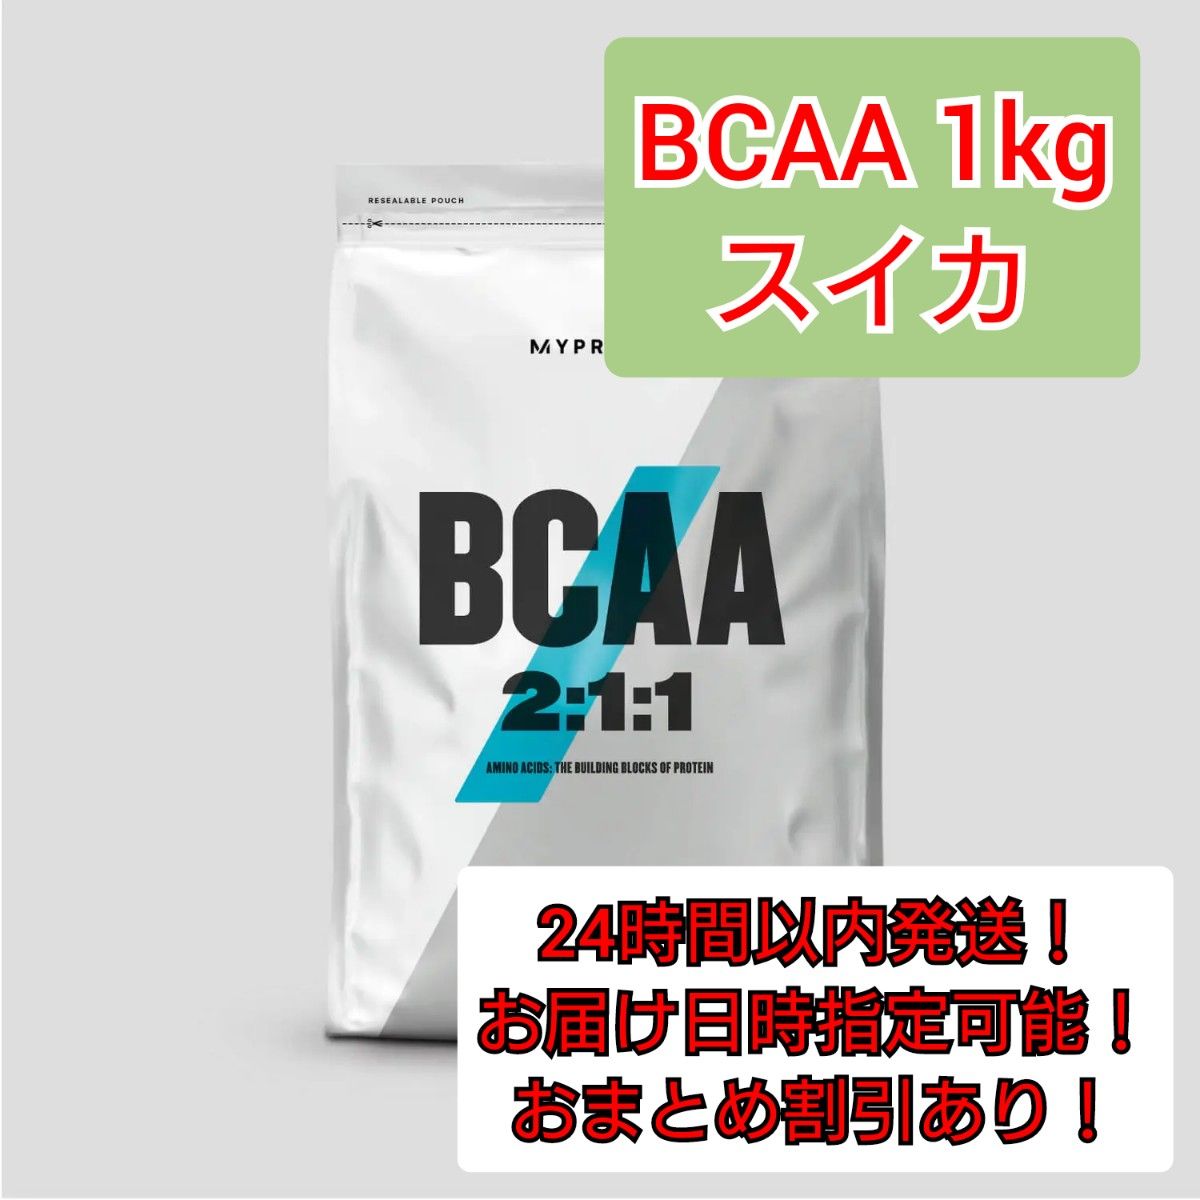 スイカ BCAA 1kg